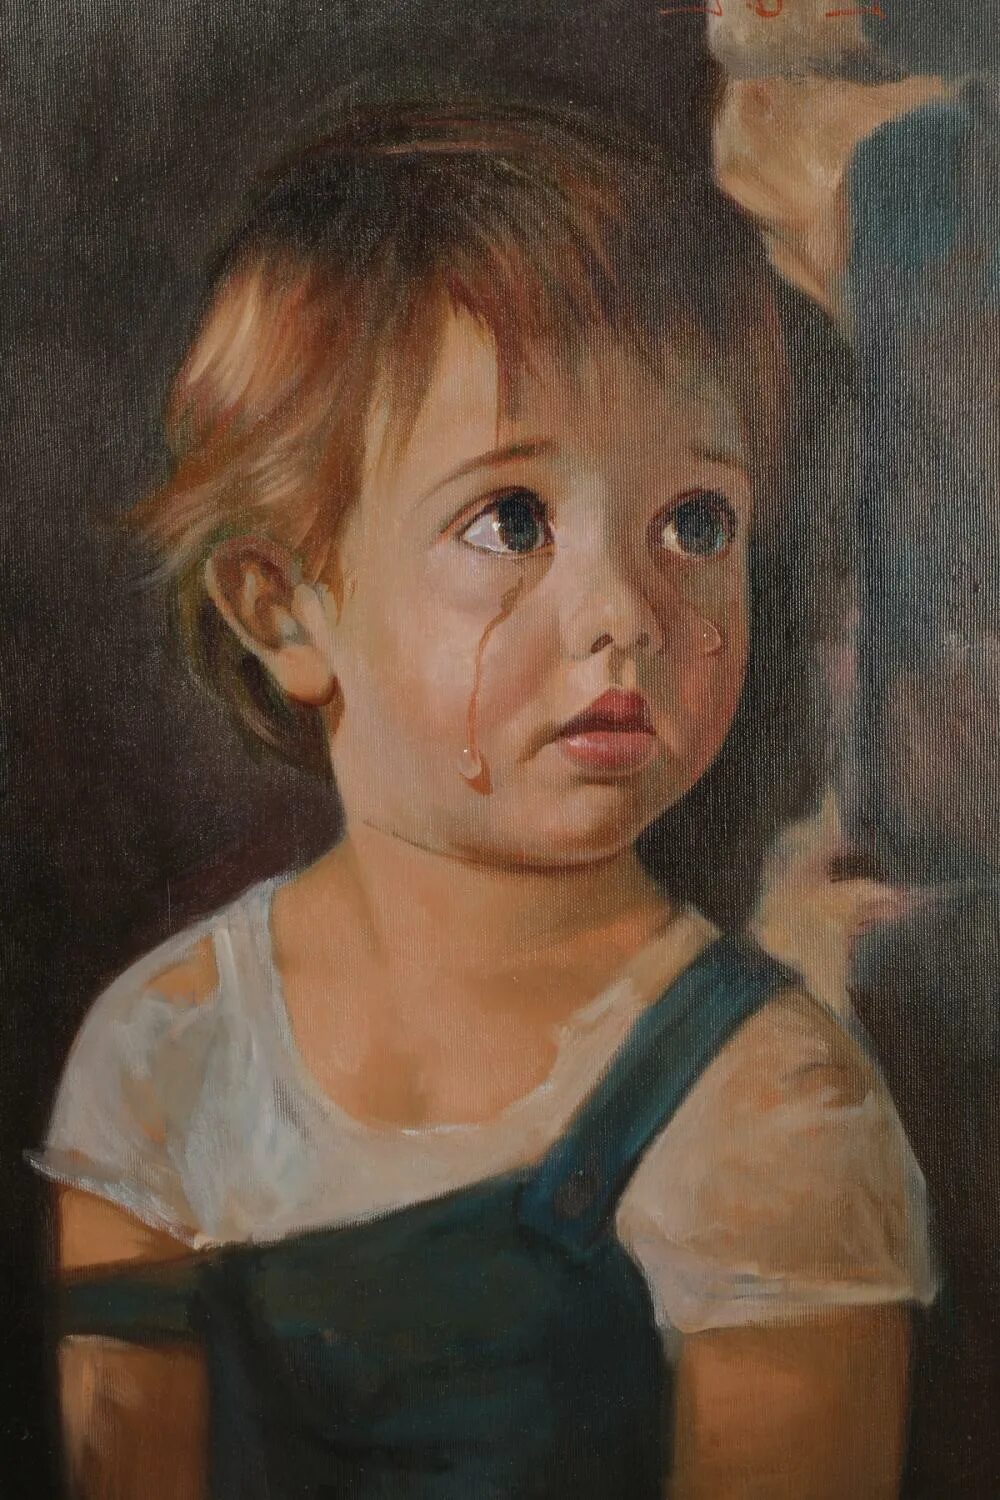 Проклятая картина плачущий мальчик история картины. Джованни Браголин. Плачущий мальчик картина испанского художника Джованни Браголина.